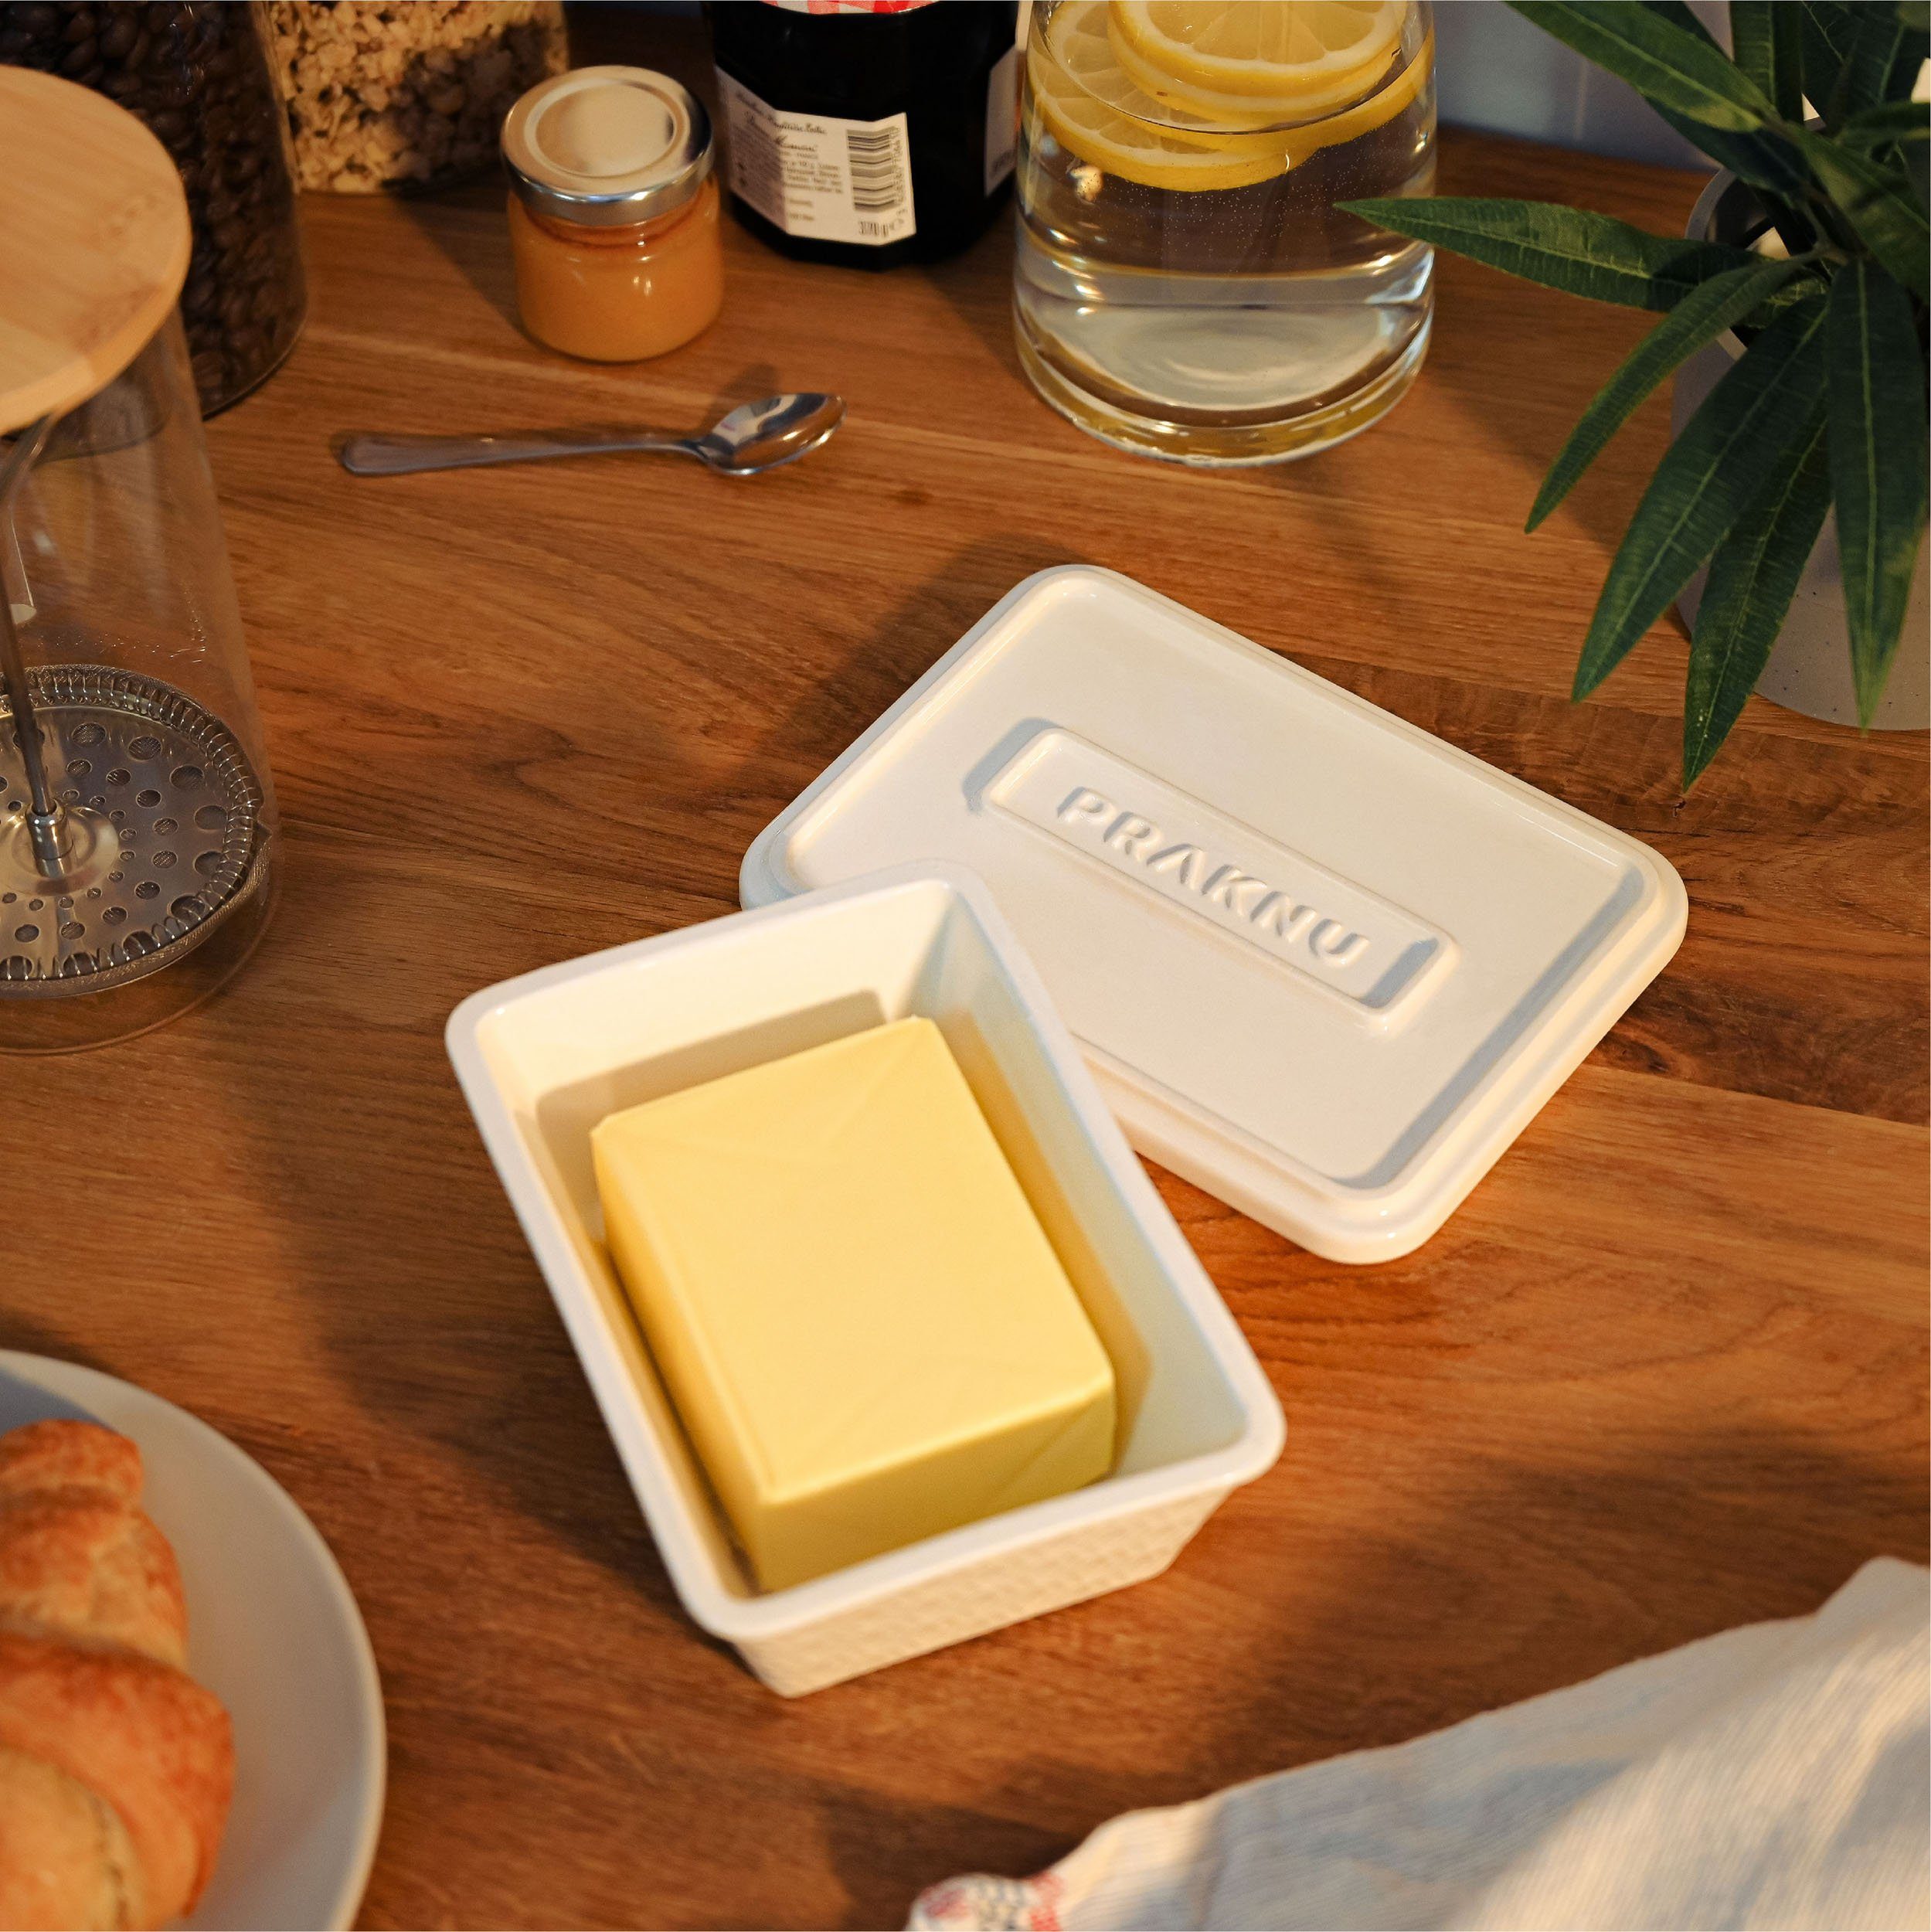 Hält Spülmaschinengeeignet Praknu 1-tlg), Butter länger frisch Butter, (Packung, für 250g - Butterdose aus Butterdose Weiß Keramik Keramik,